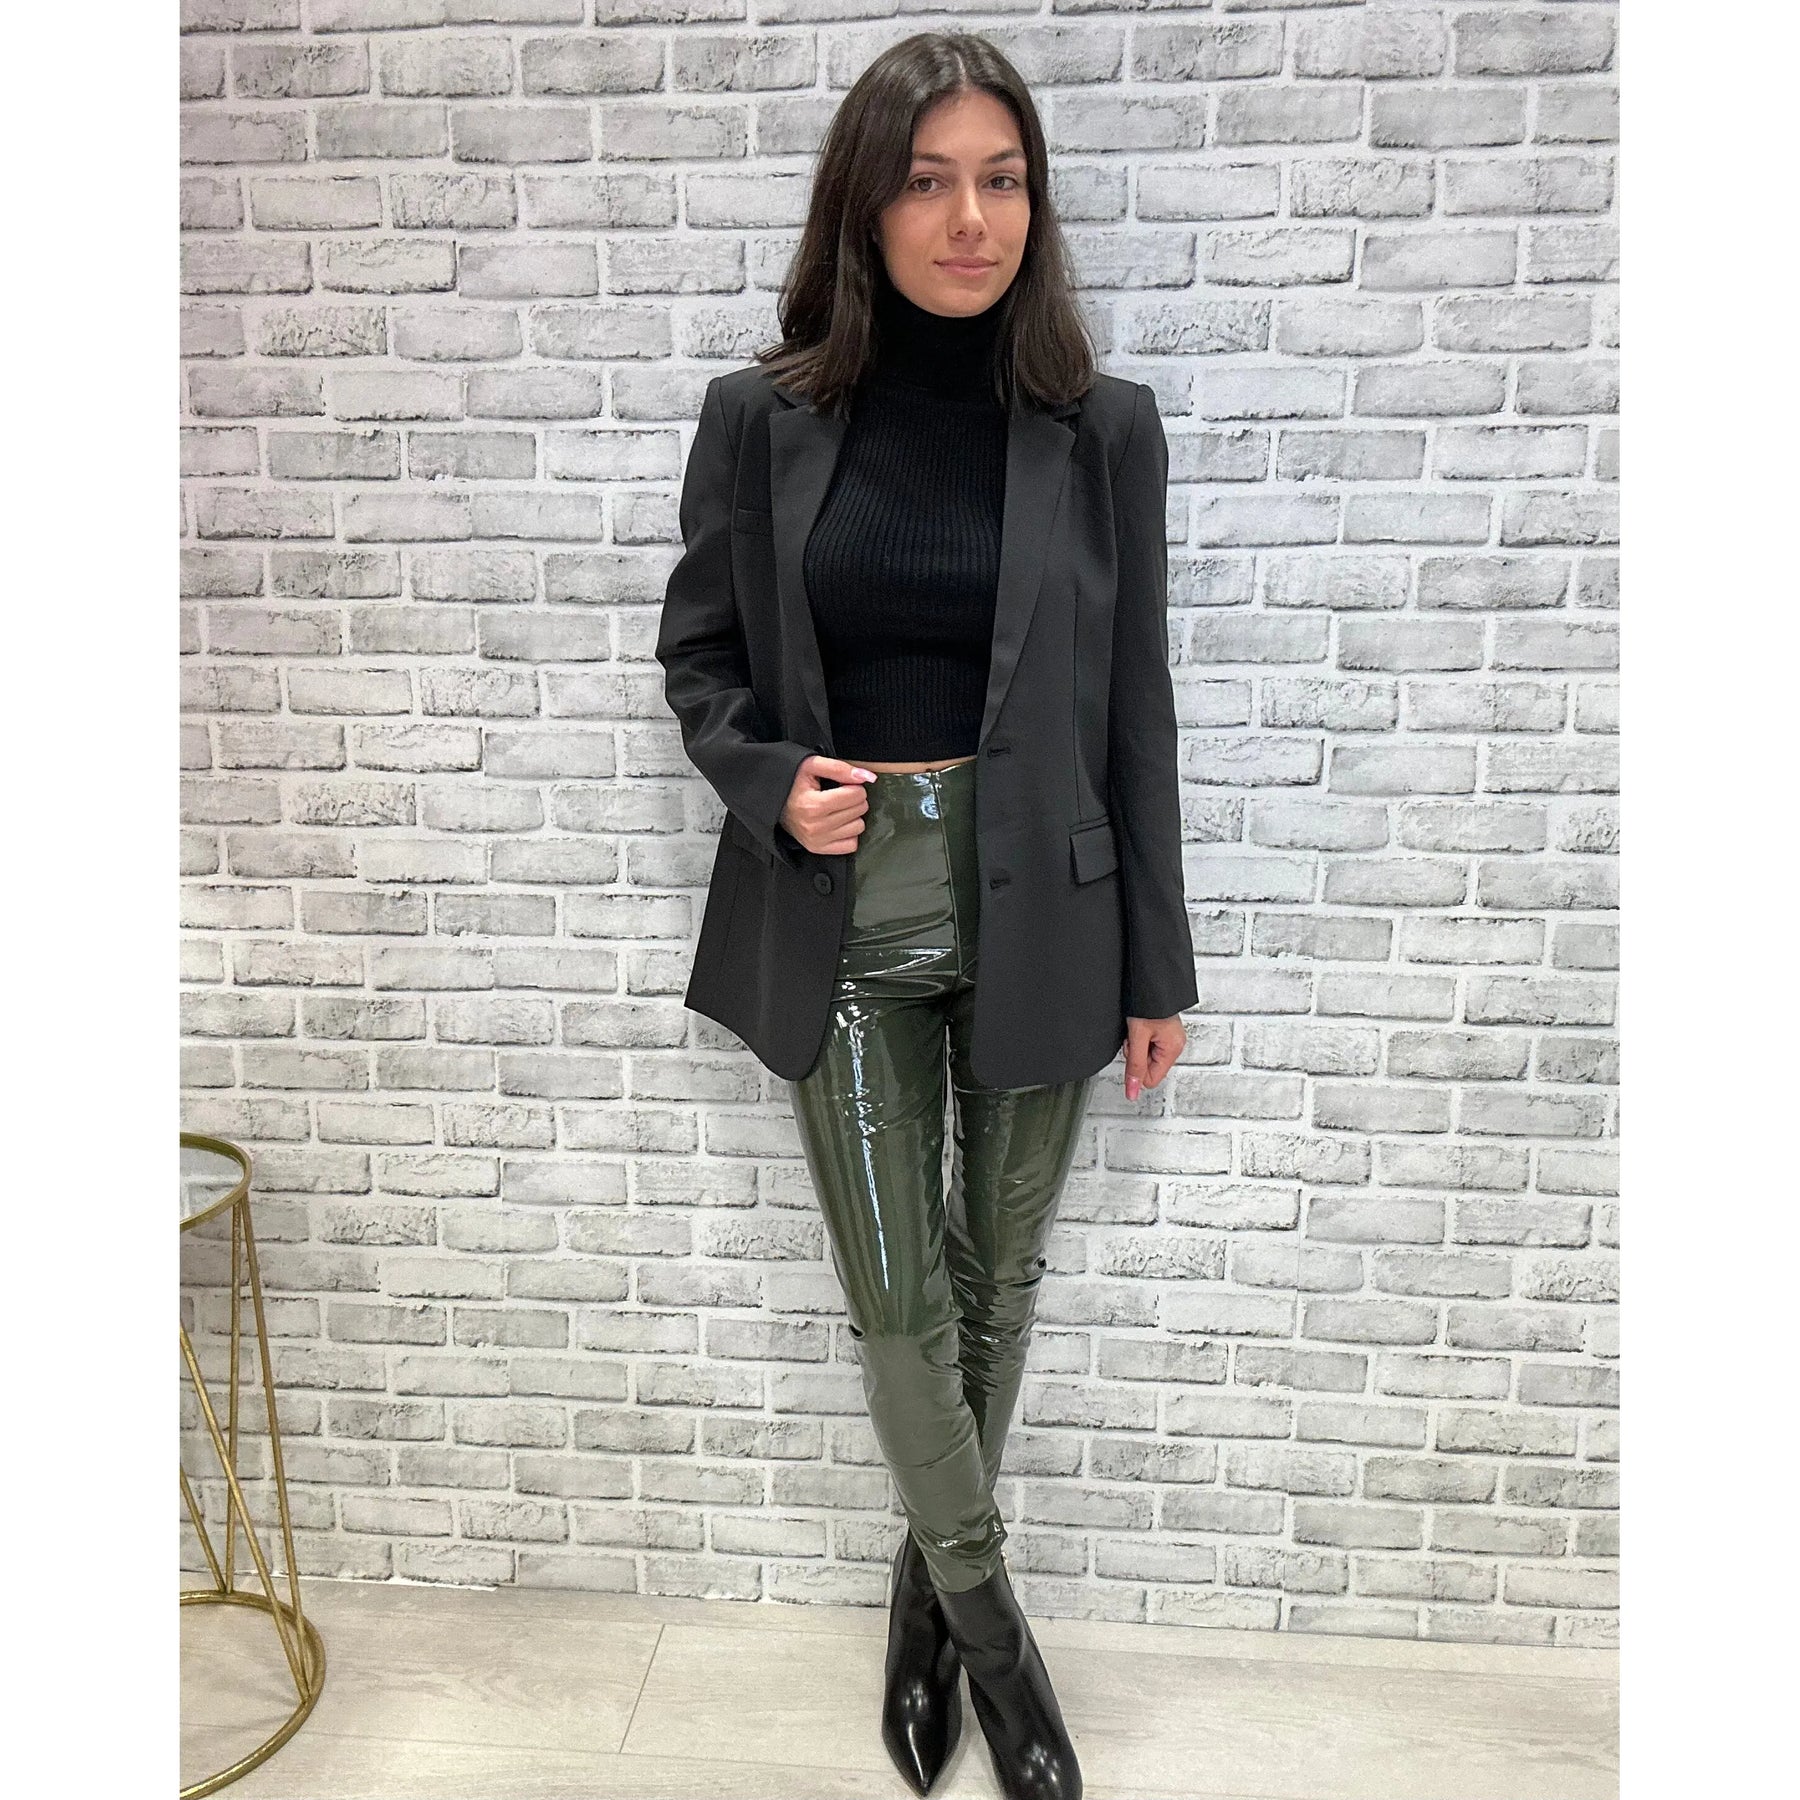 Commando Patent Leather Legging - Olive – Alicia DiMichele Boutique